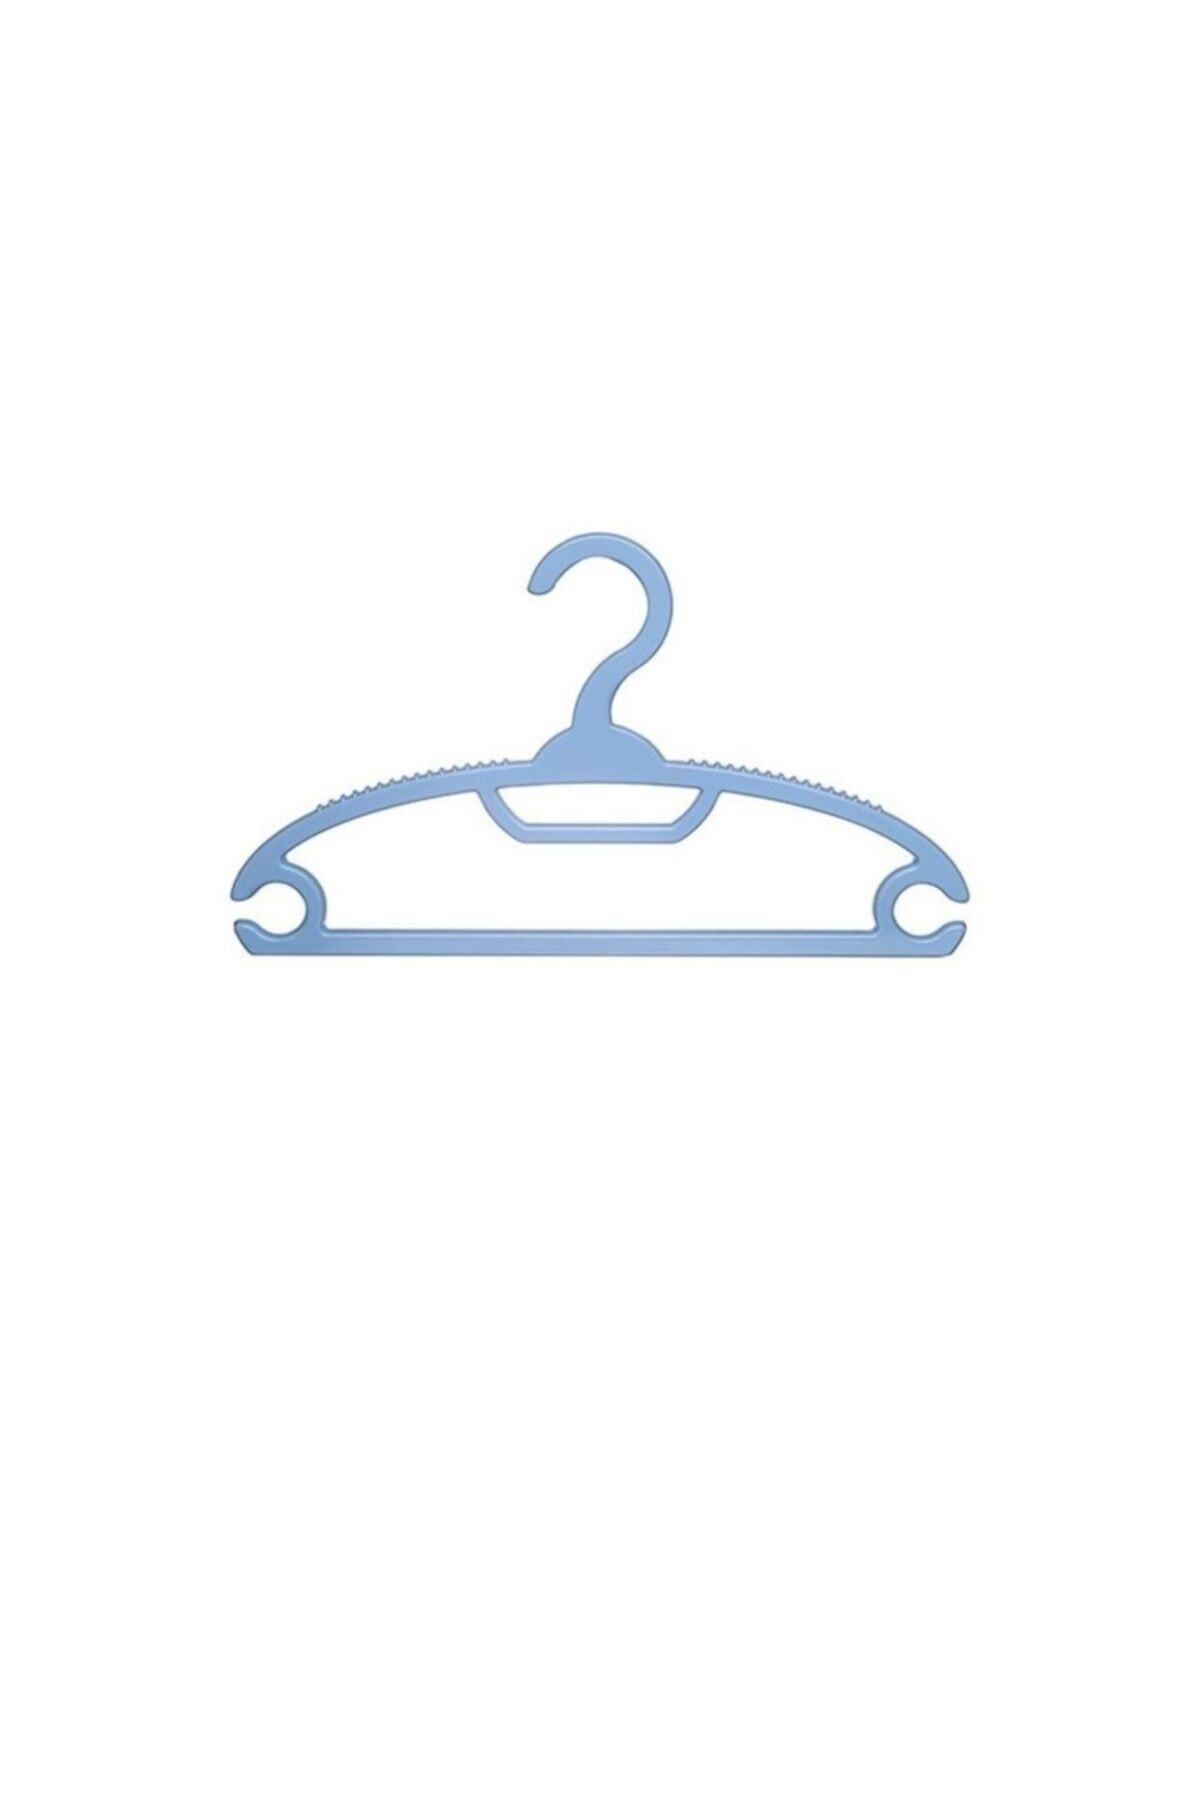 Gondol Çocuk Kıyafet Askısı Bebek Kıyafet Askısı 12 Adet Mavi